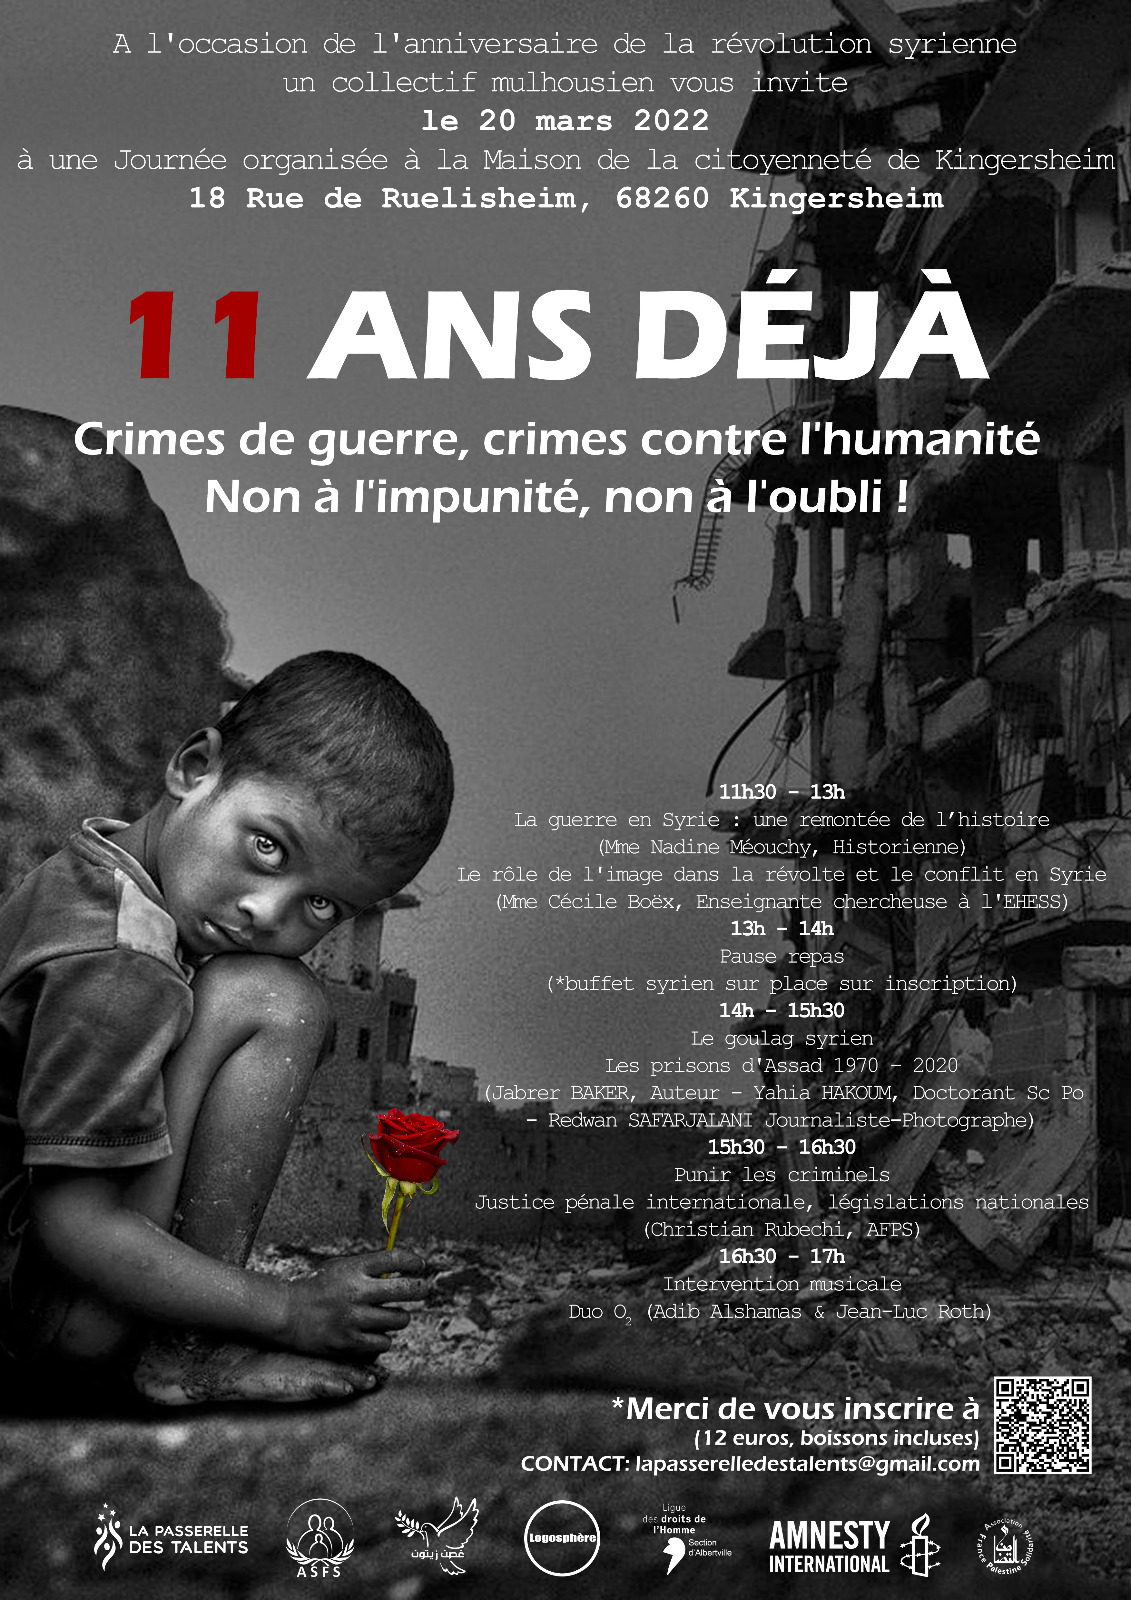 Conférences-débats: 11 ans déjà crimes de guerres, crimes contre l'humanité Non à l'impunité, non à l'oubli!